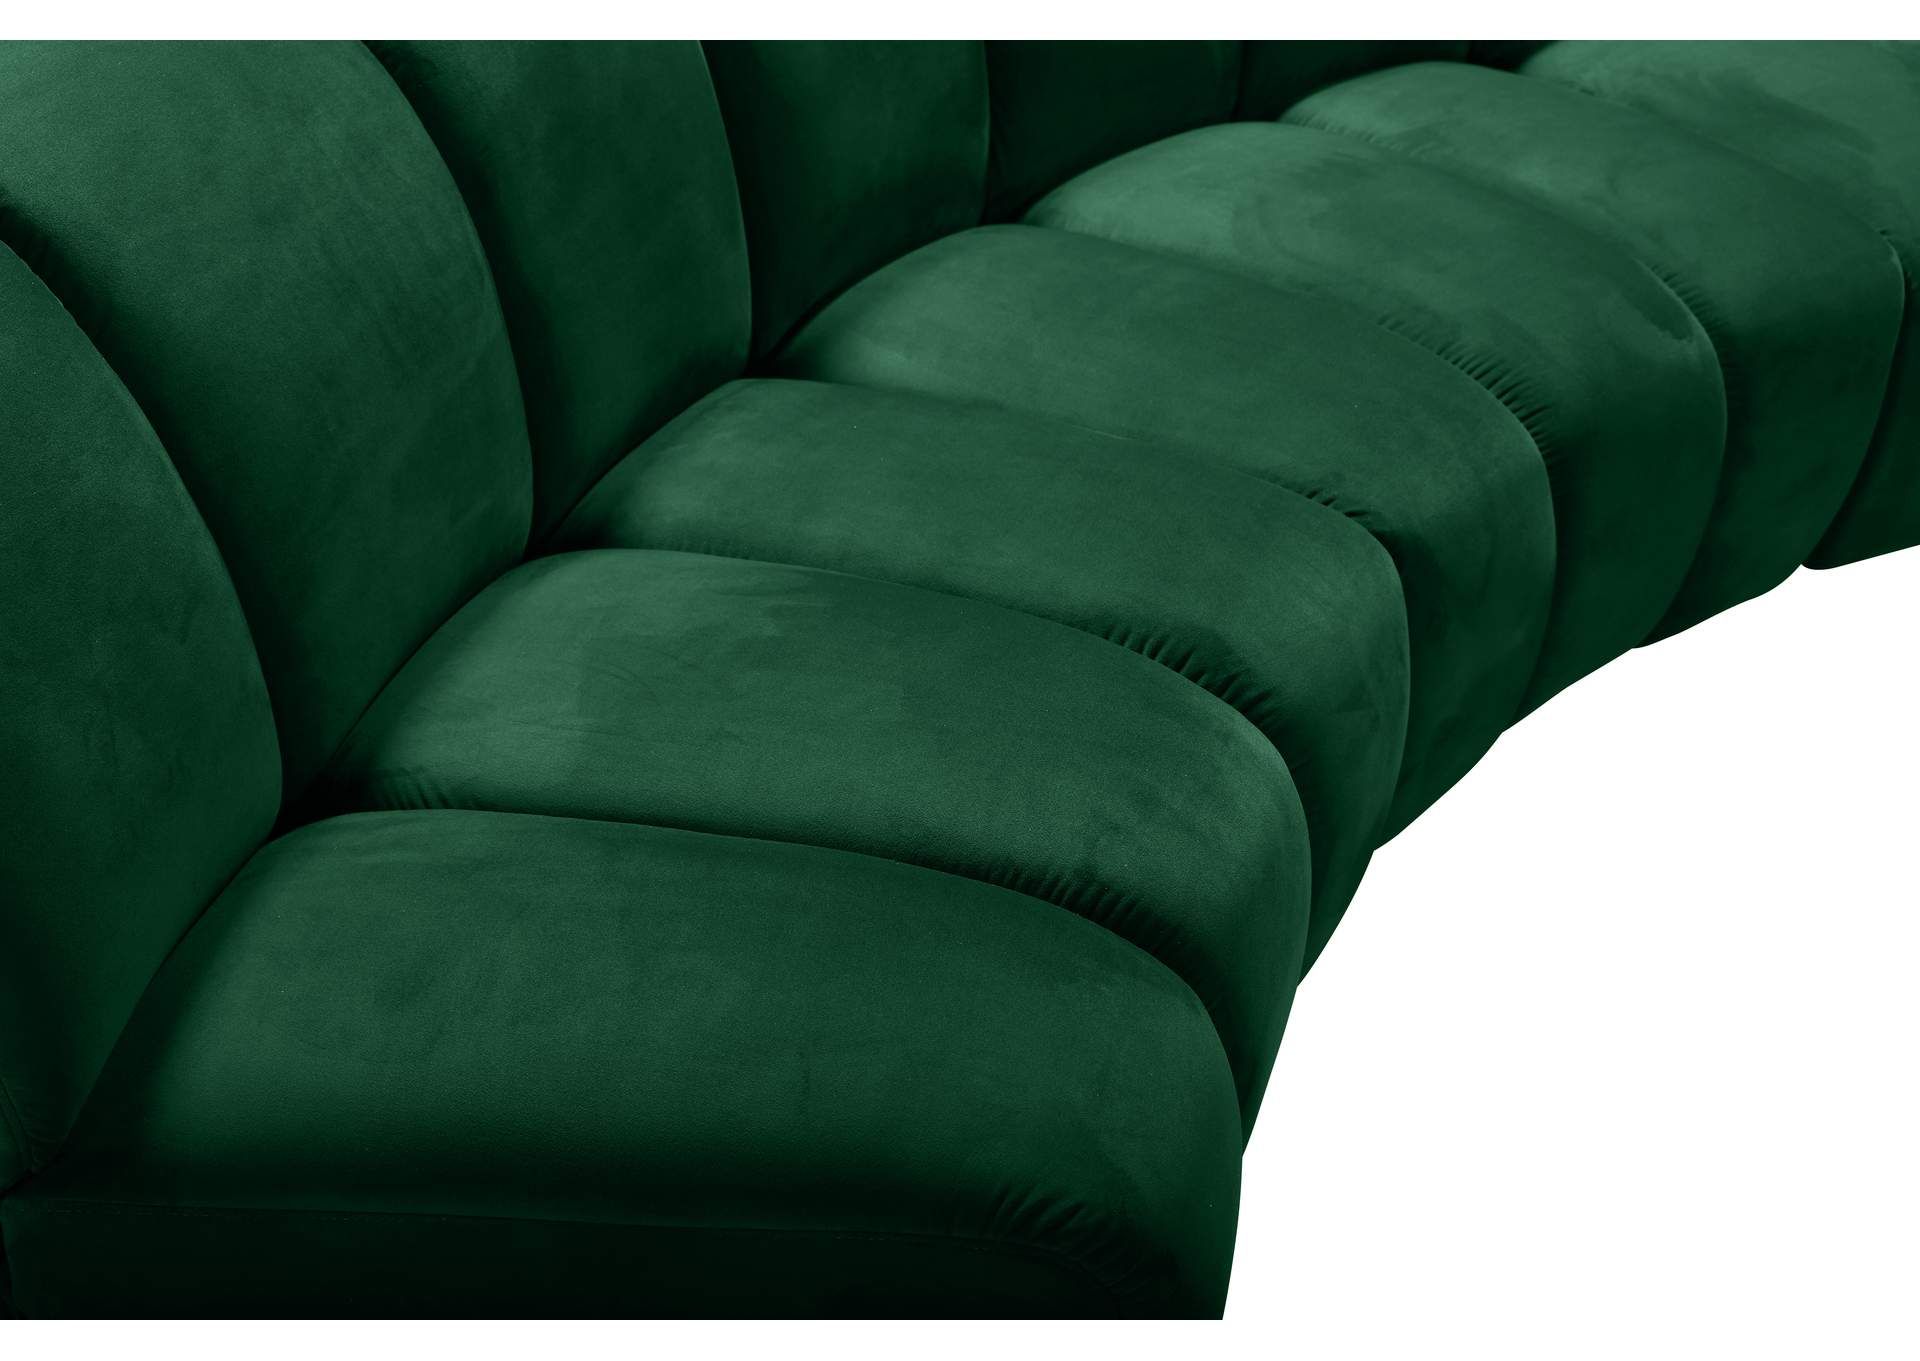 Infinity Green Velvet 4pc. Modular Sectional Best Buy Furniture And Regarding Green Velvet Modular Sectionals (Gallery 15 of 20)